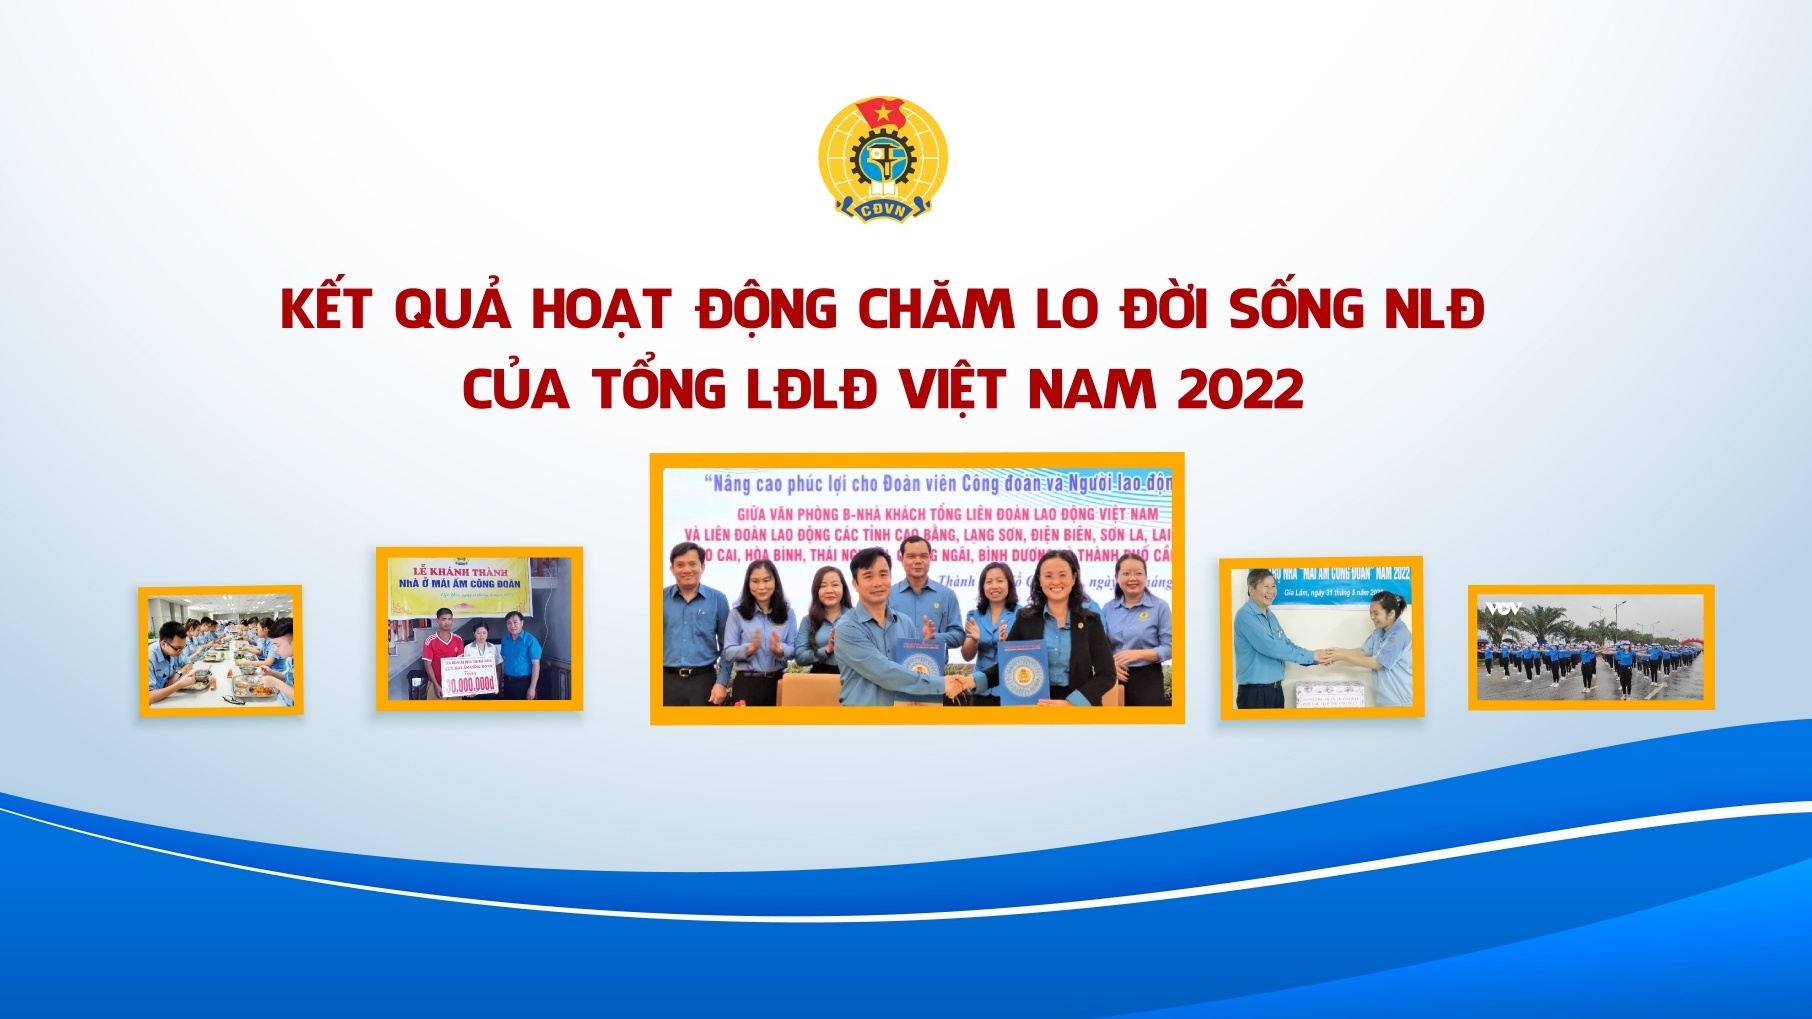 Kết quả hoạt động chăm lo đời sống NLĐ của Tổng LĐLĐ Việt Nam năm 2022